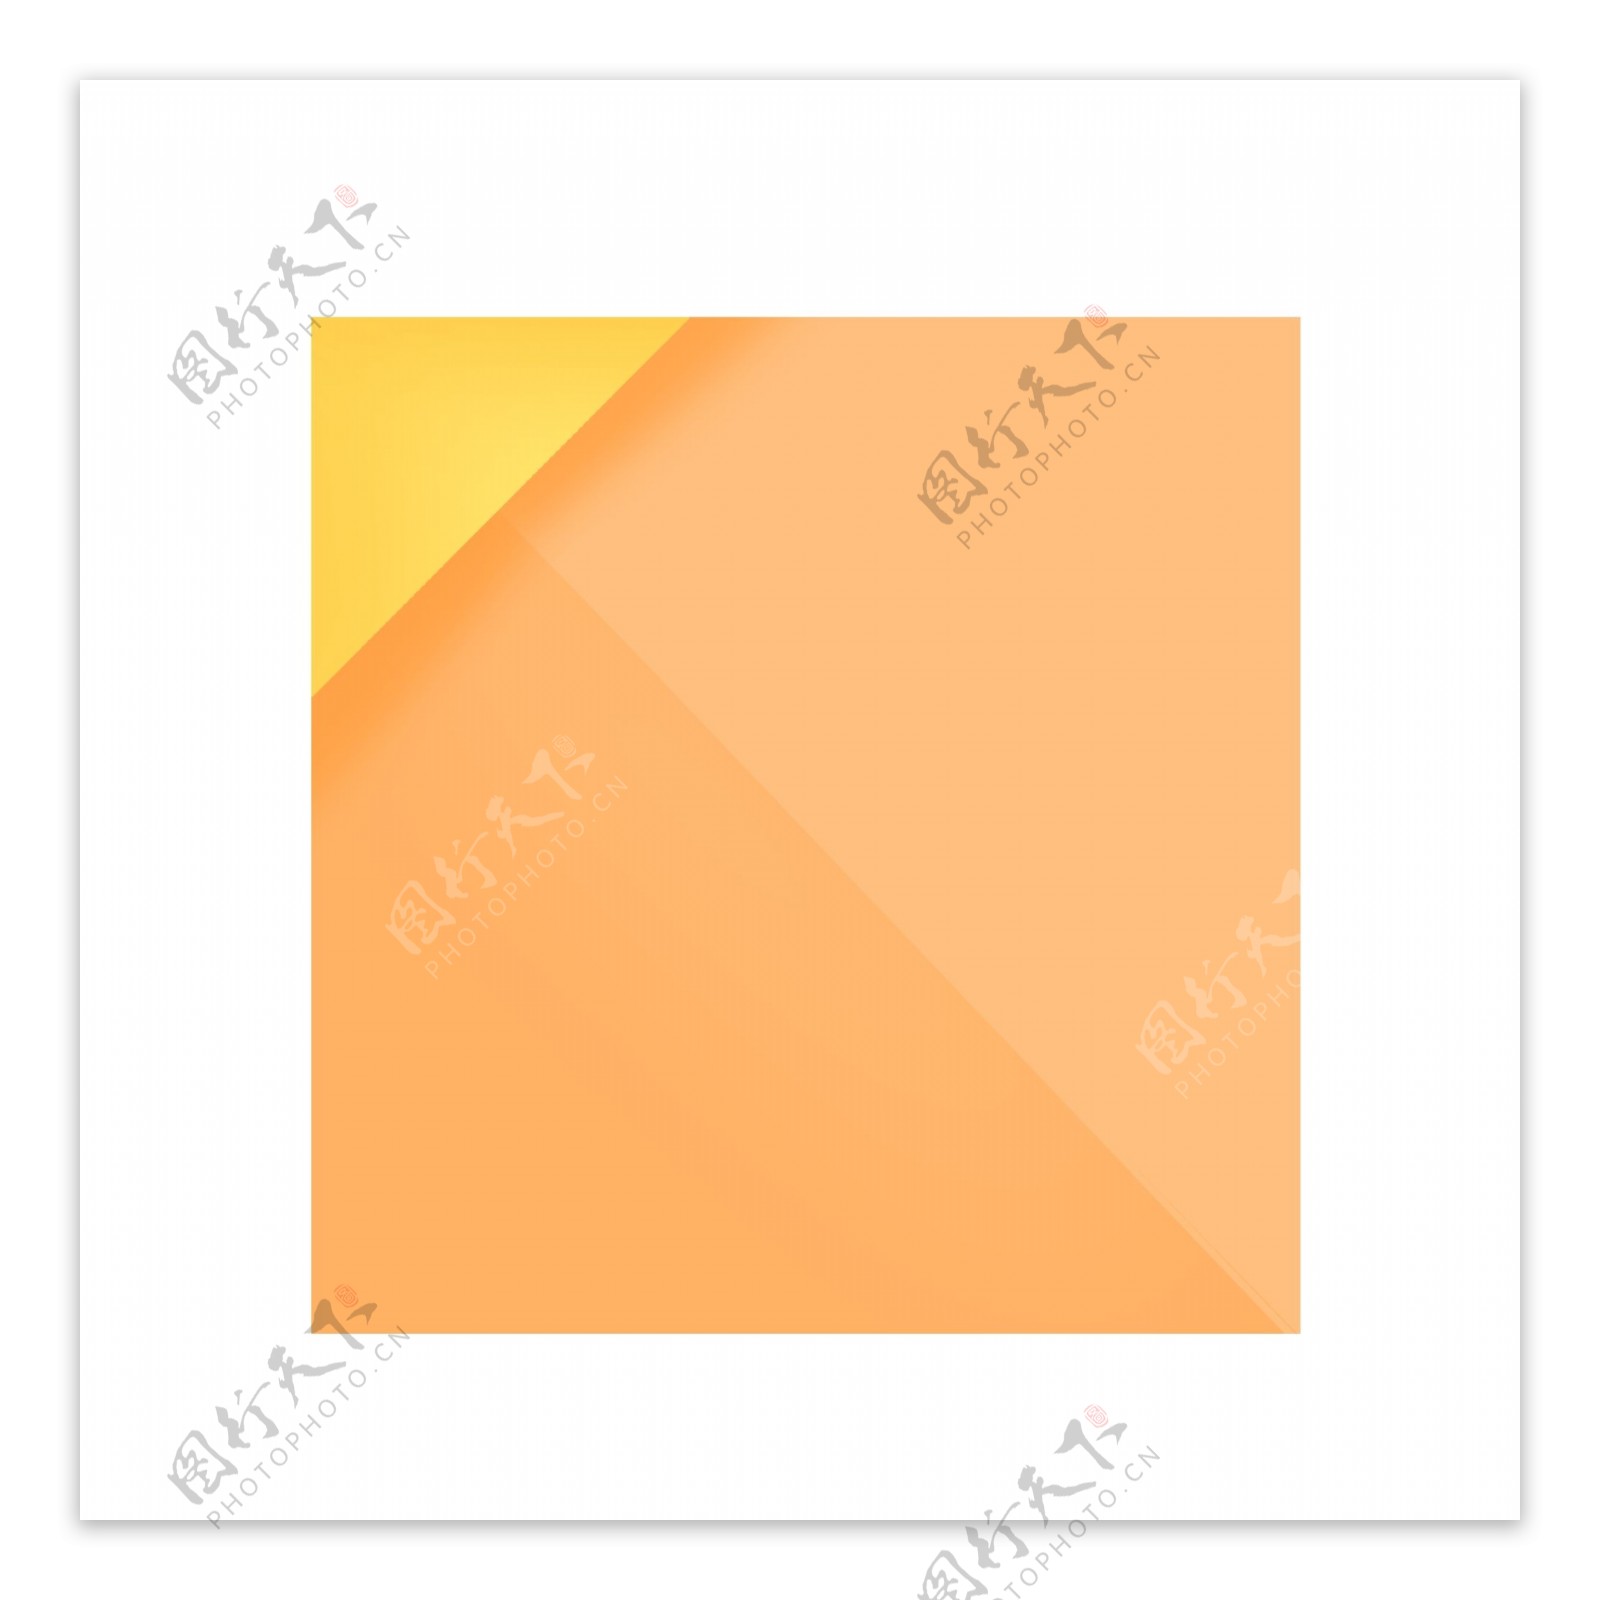 黄色正方形折纸标题框